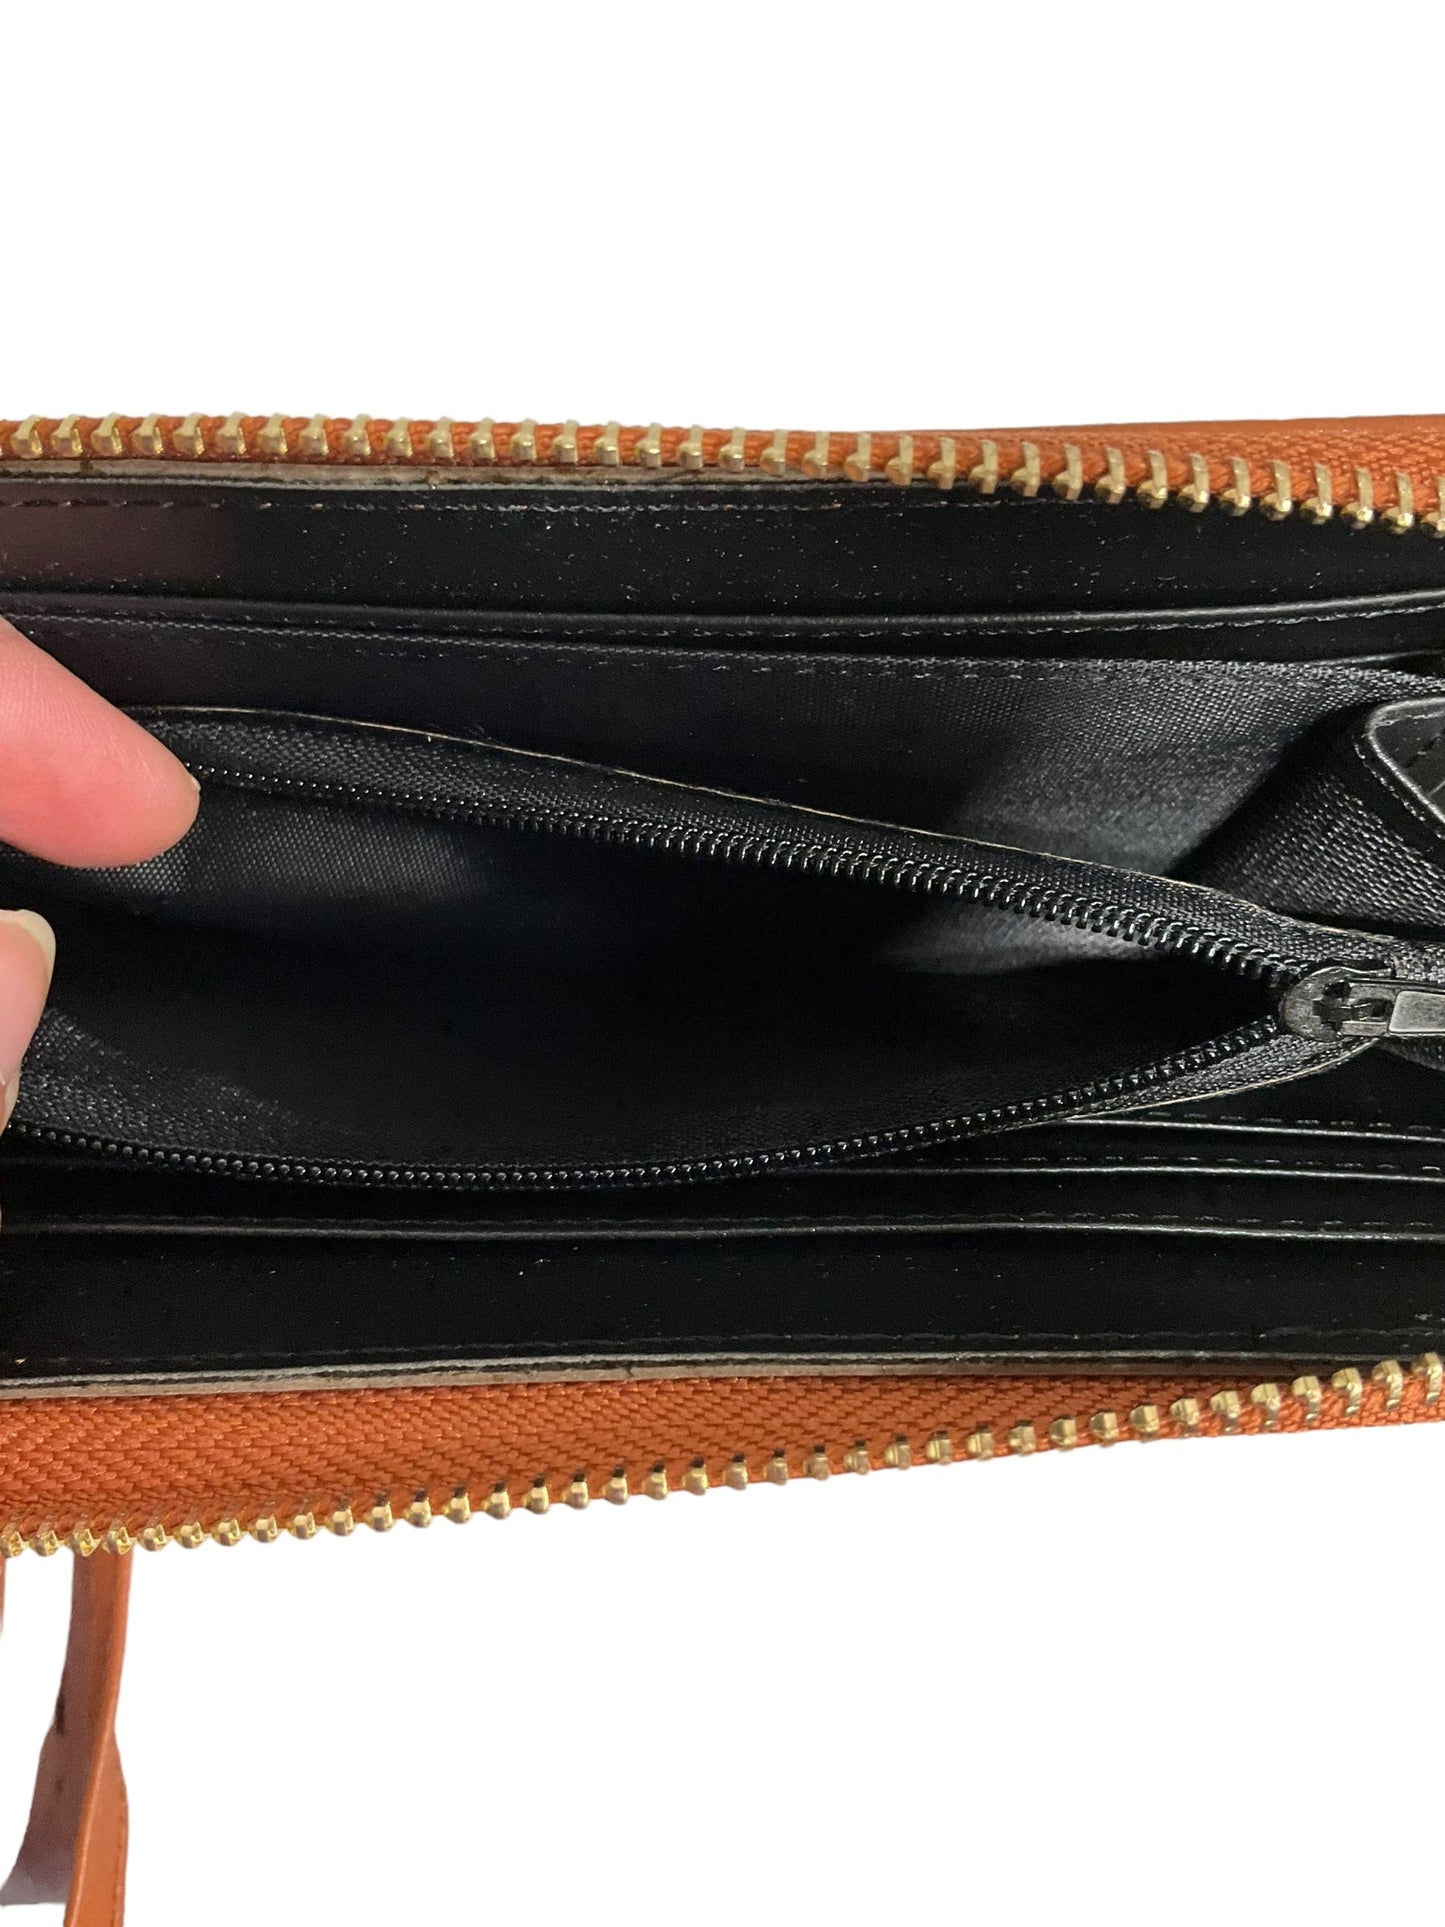 Wallet By Rue 21  Size: Medium